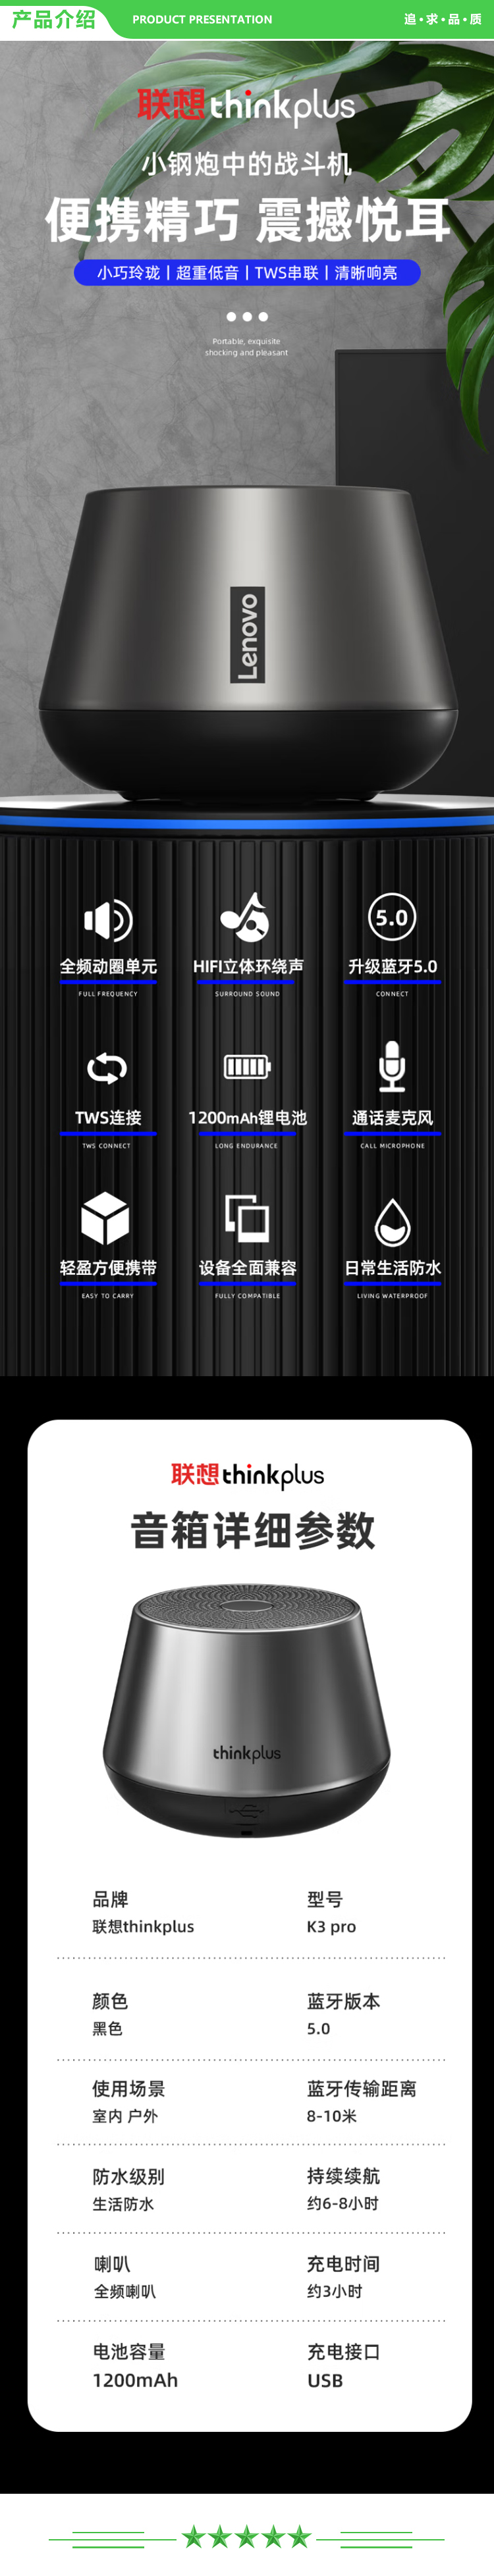 联想 Lenovo thinkplus K3Pro 蓝牙音响 无线迷你音响 手机电脑户外家用便携重低音炮多媒体蓝牙音箱 .jpg